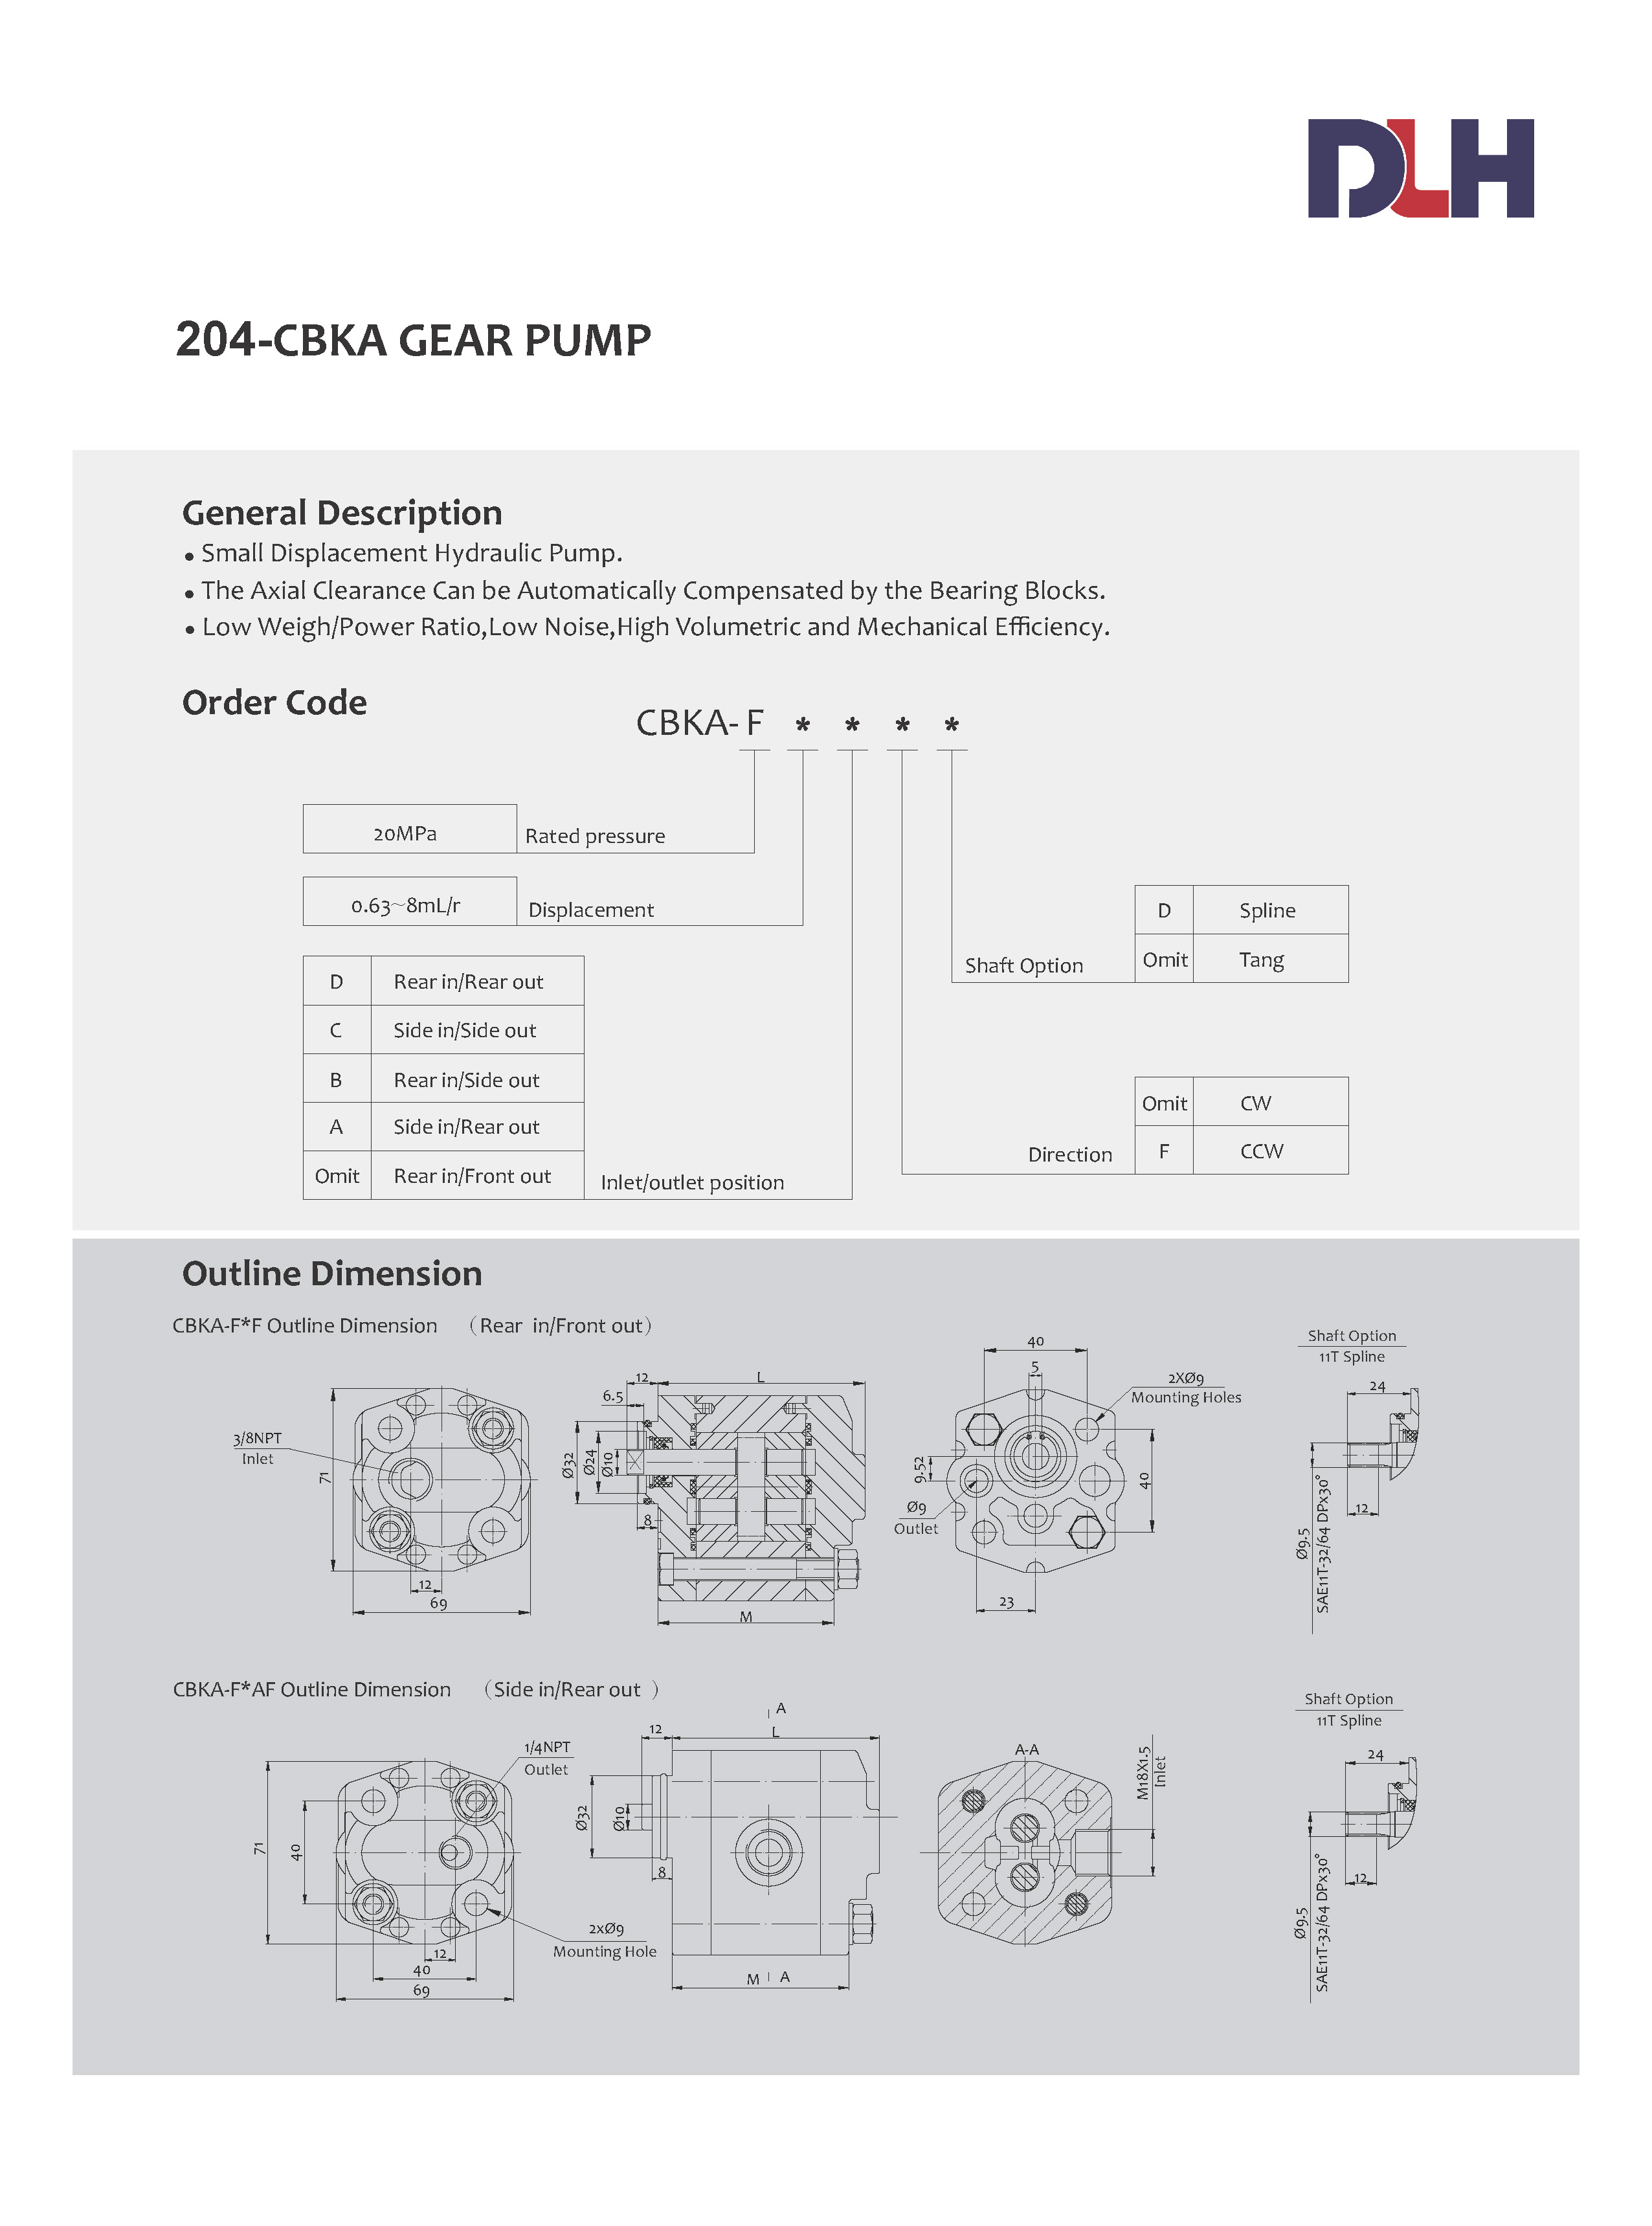 CBKA Gear Pumps